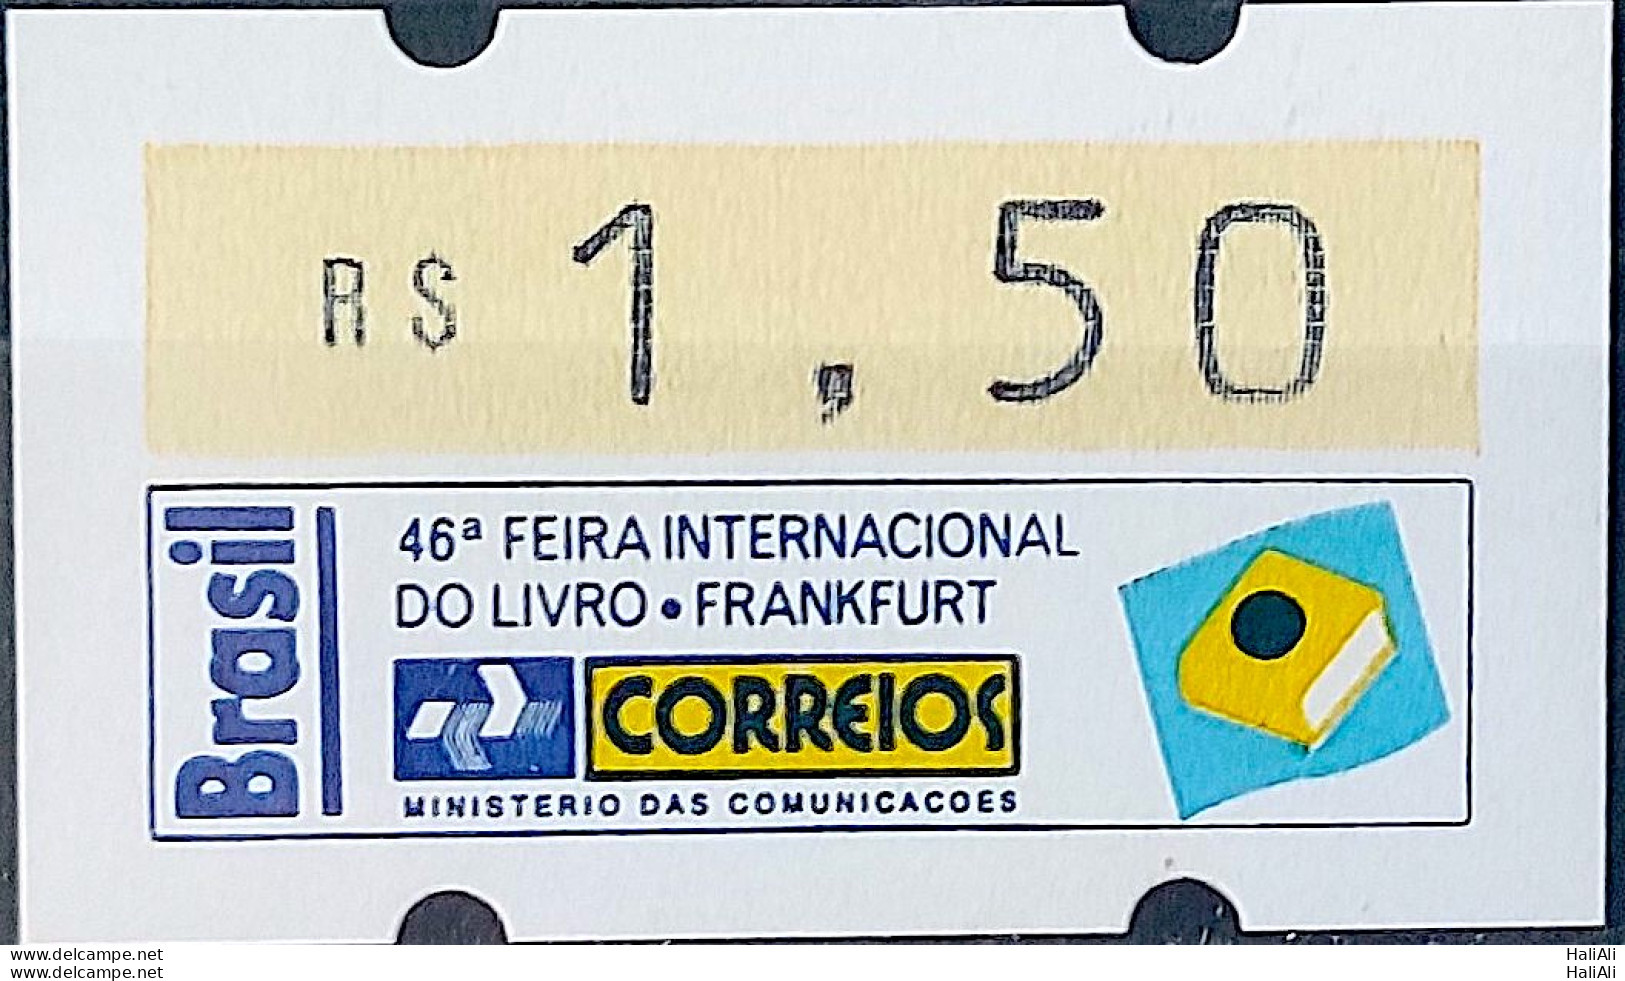 SE 06A Brazil Stamp Label Etiqueta Etichetta Automato Frankfurt 1994 - Franking Labels